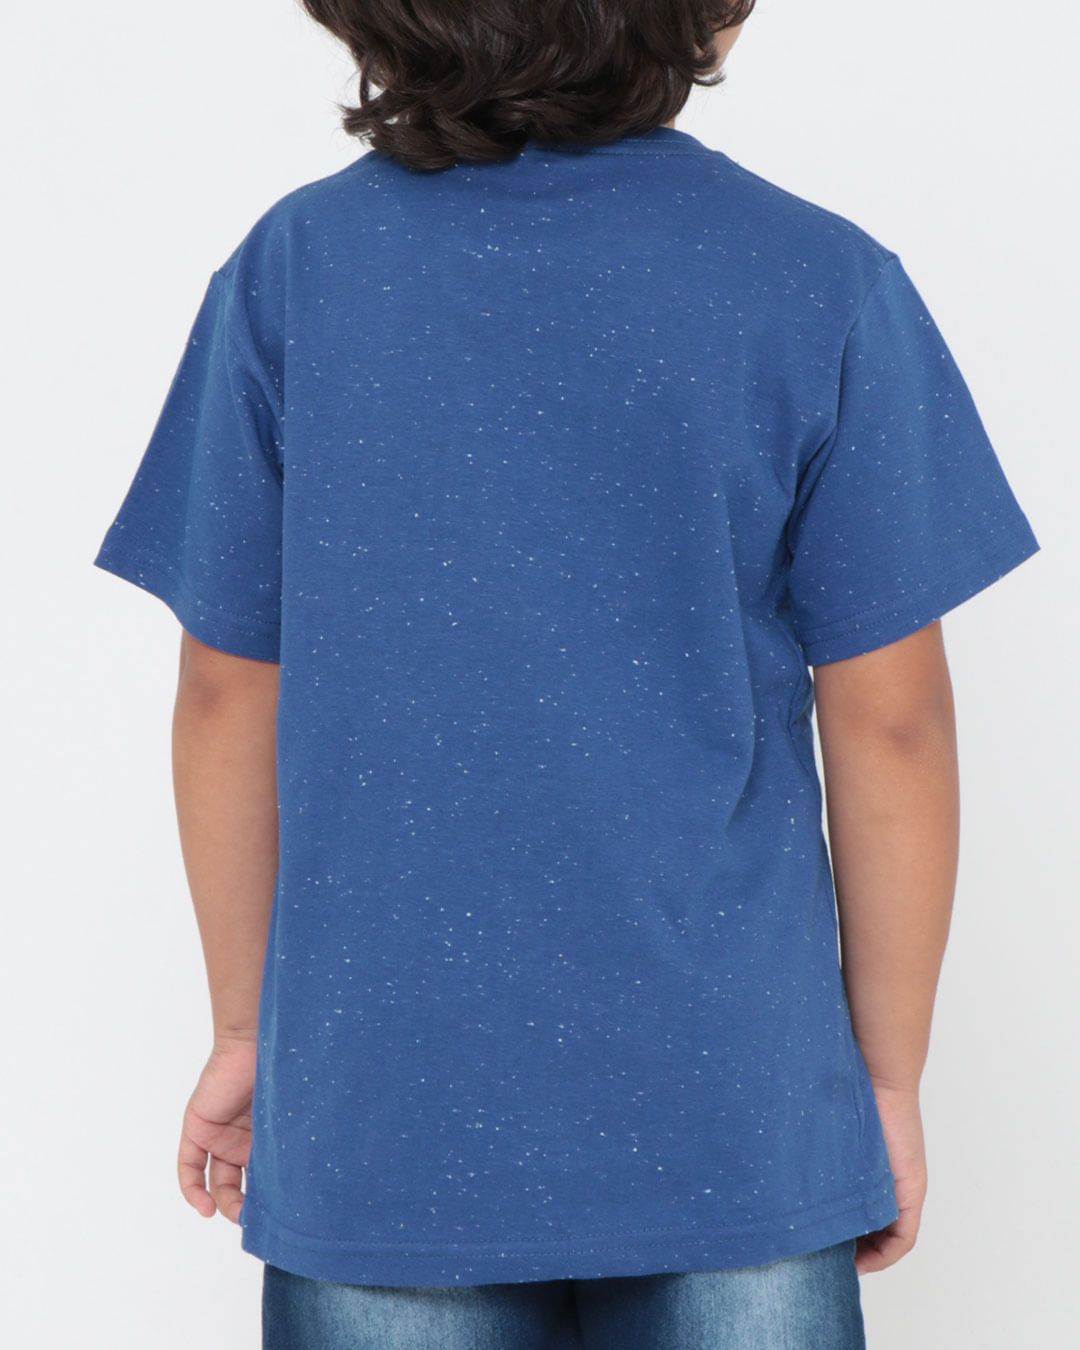 Camiseta-29832-Mc-M410-Stre---Azul-Medio